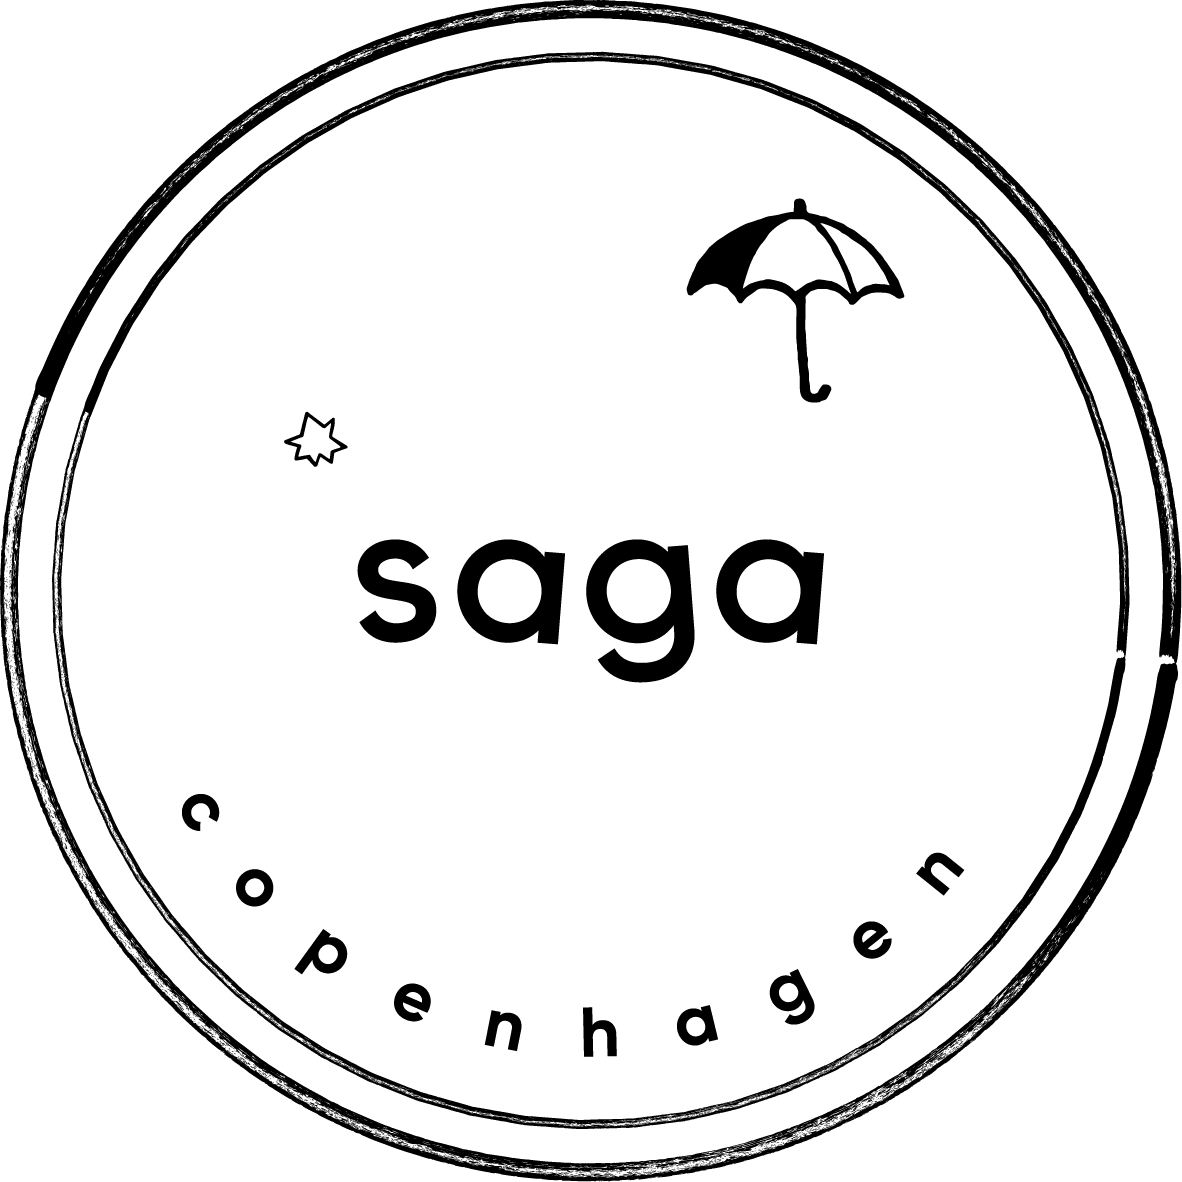 saga-copenhagen-logo